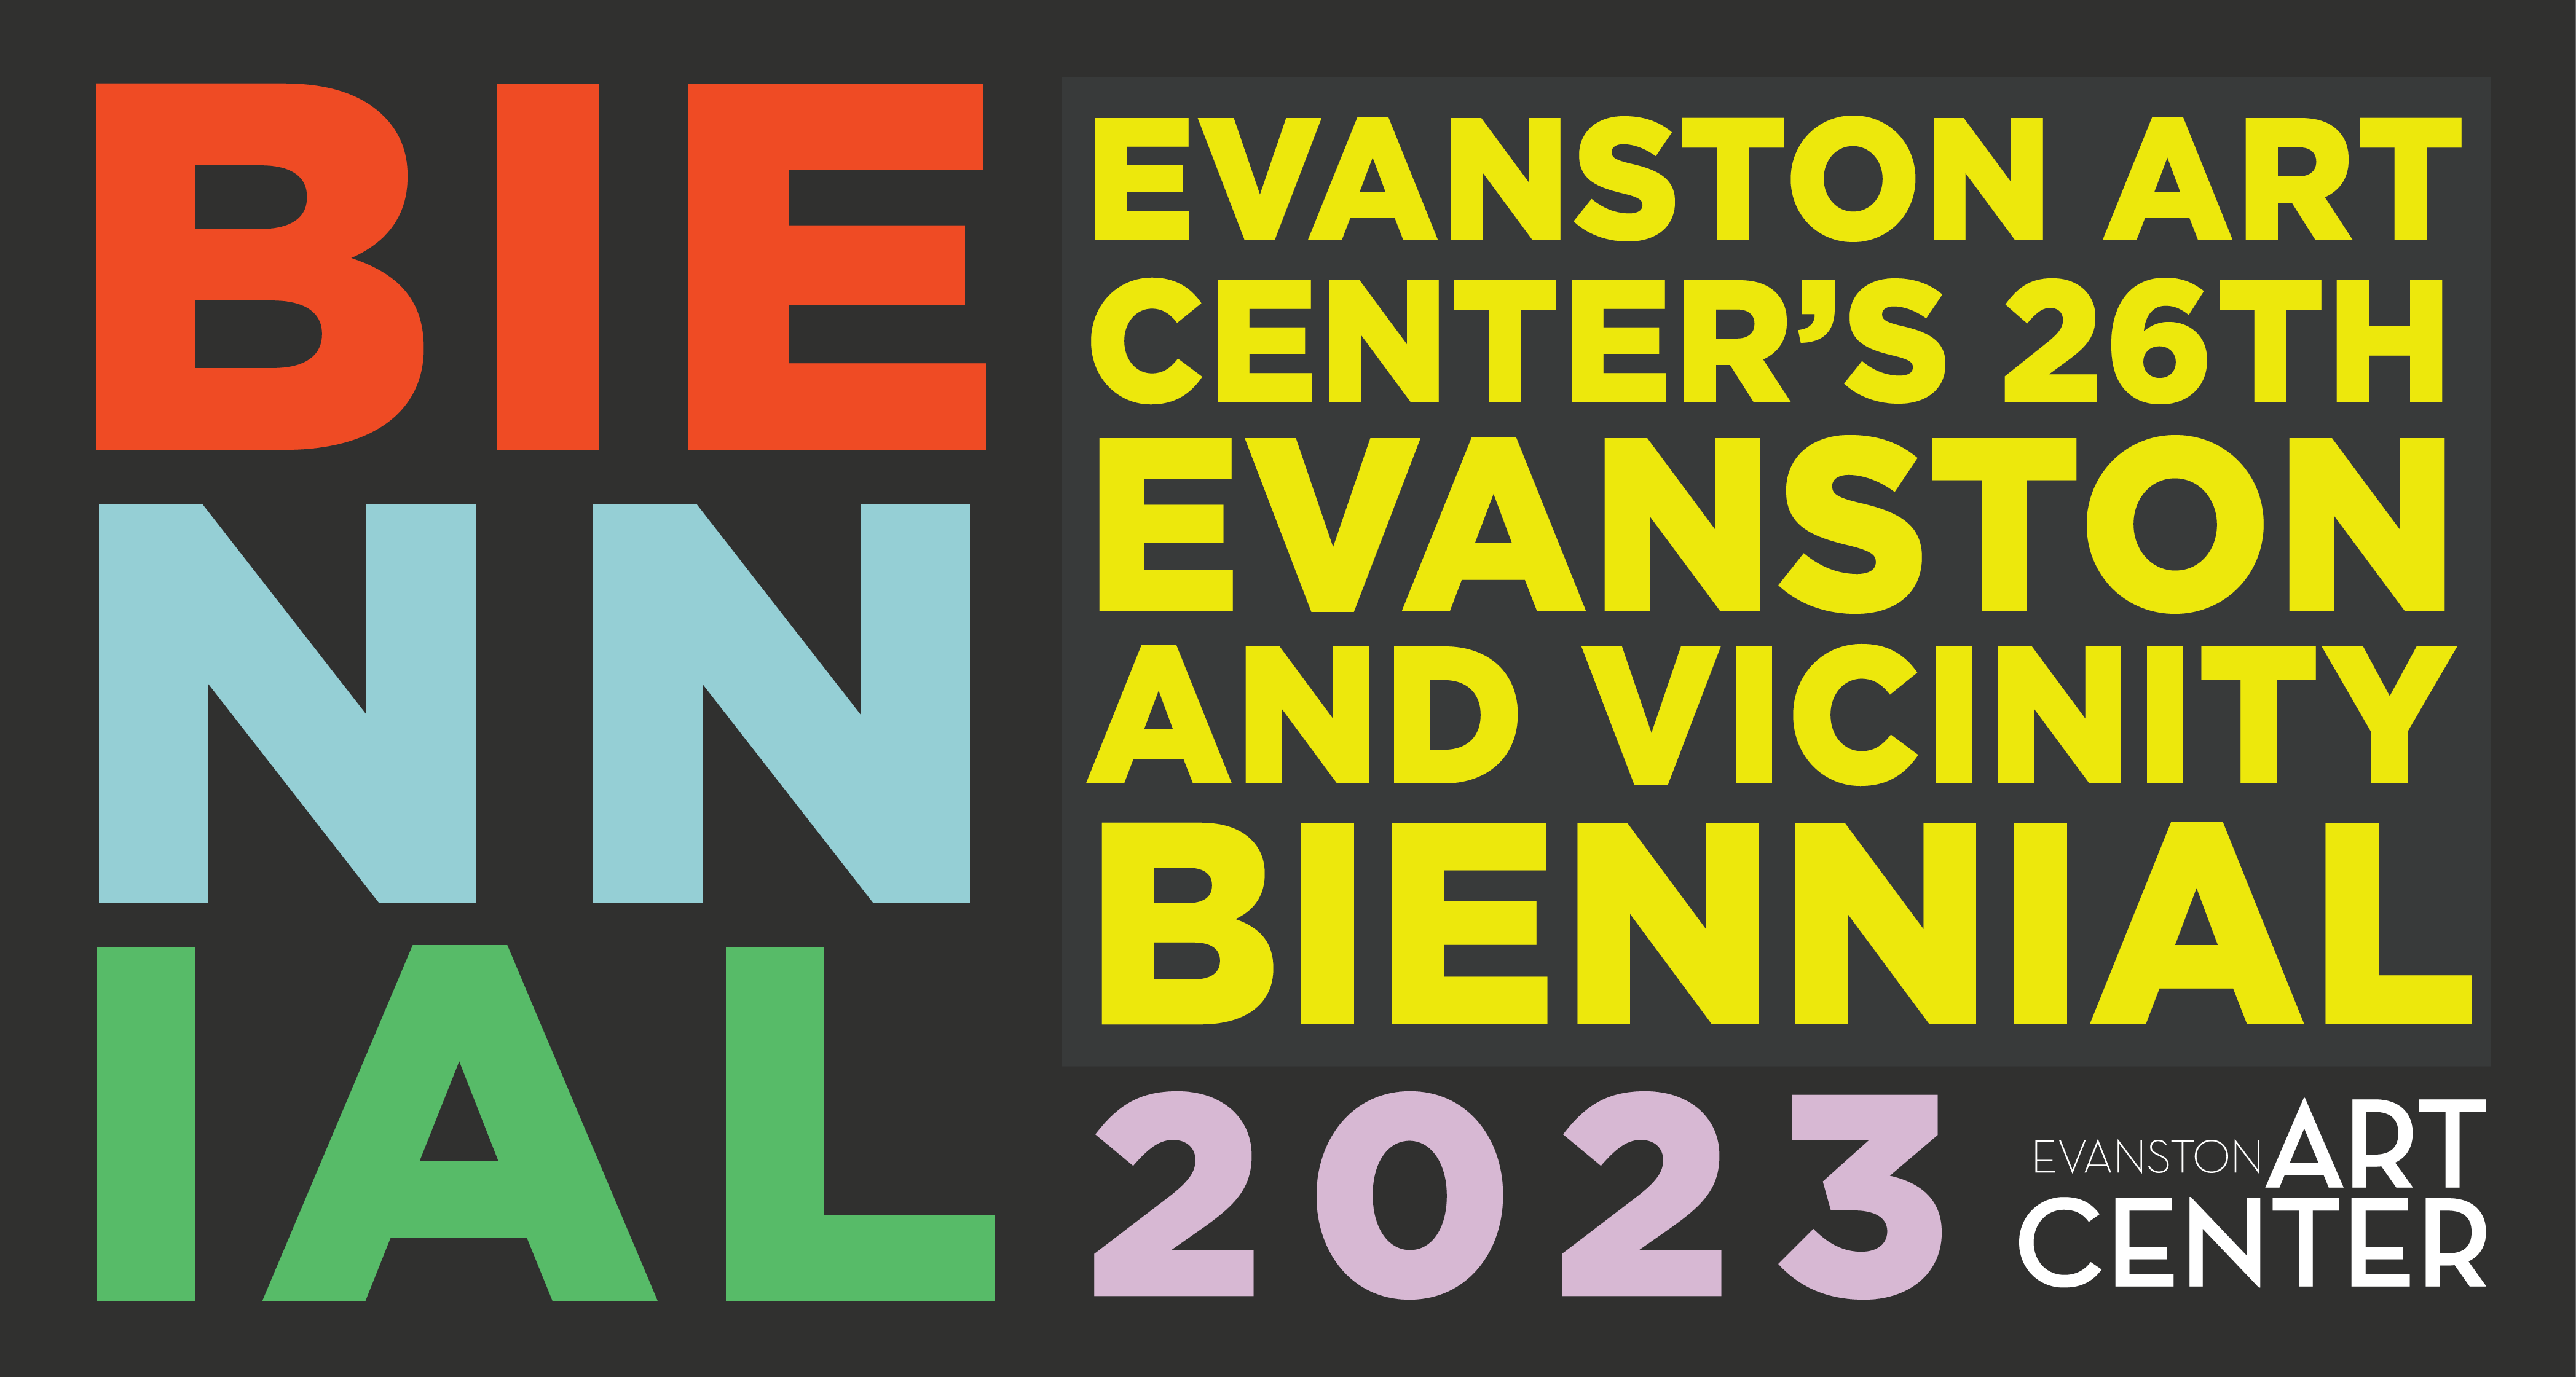 Evanston + Vicinity Biennial exhibition header graphic